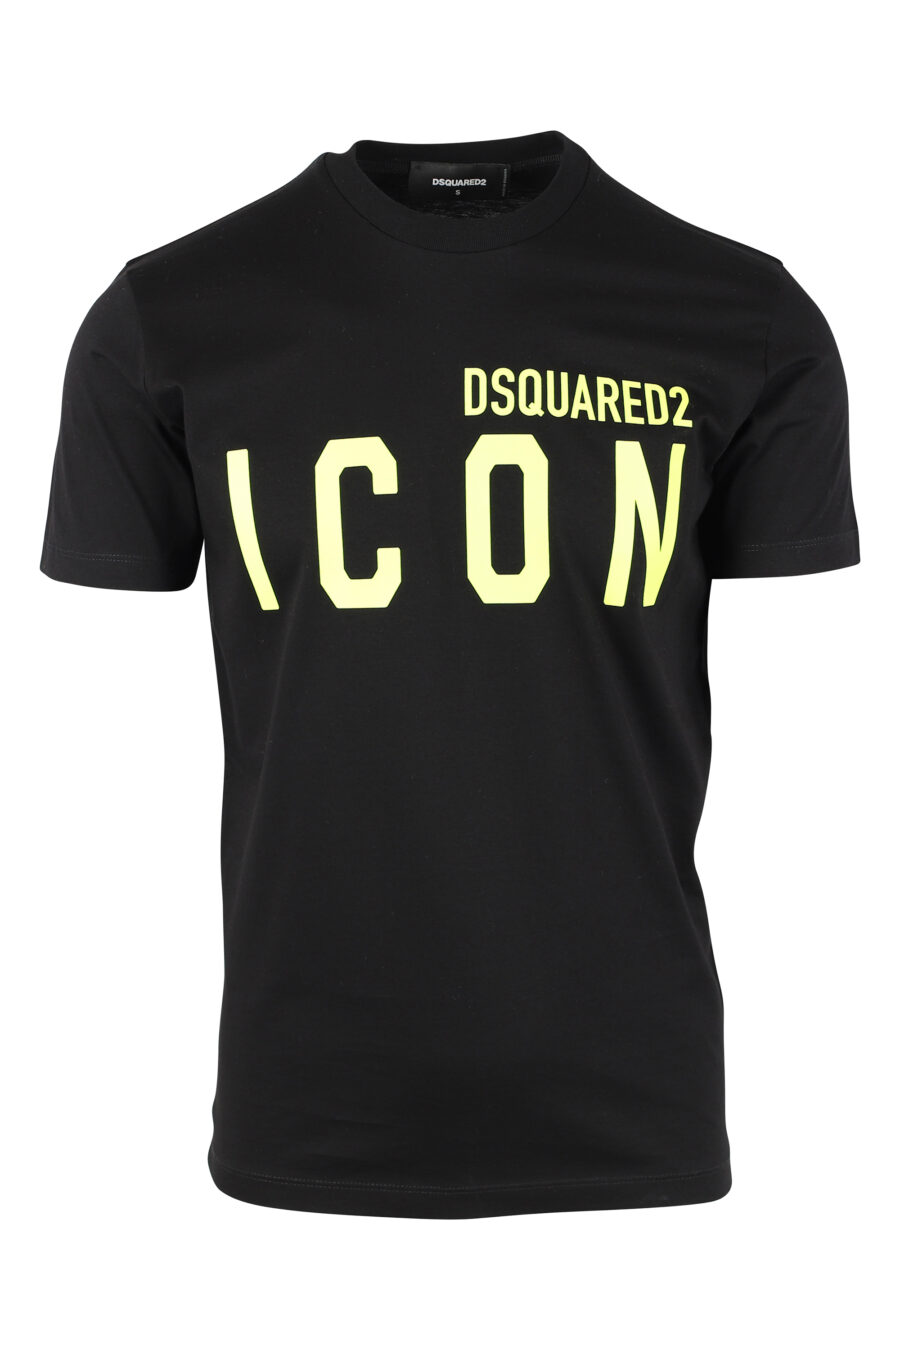 T-Shirt schwarz mit Doppellogo "icon" fluoreszierend gelb - IMG 9763